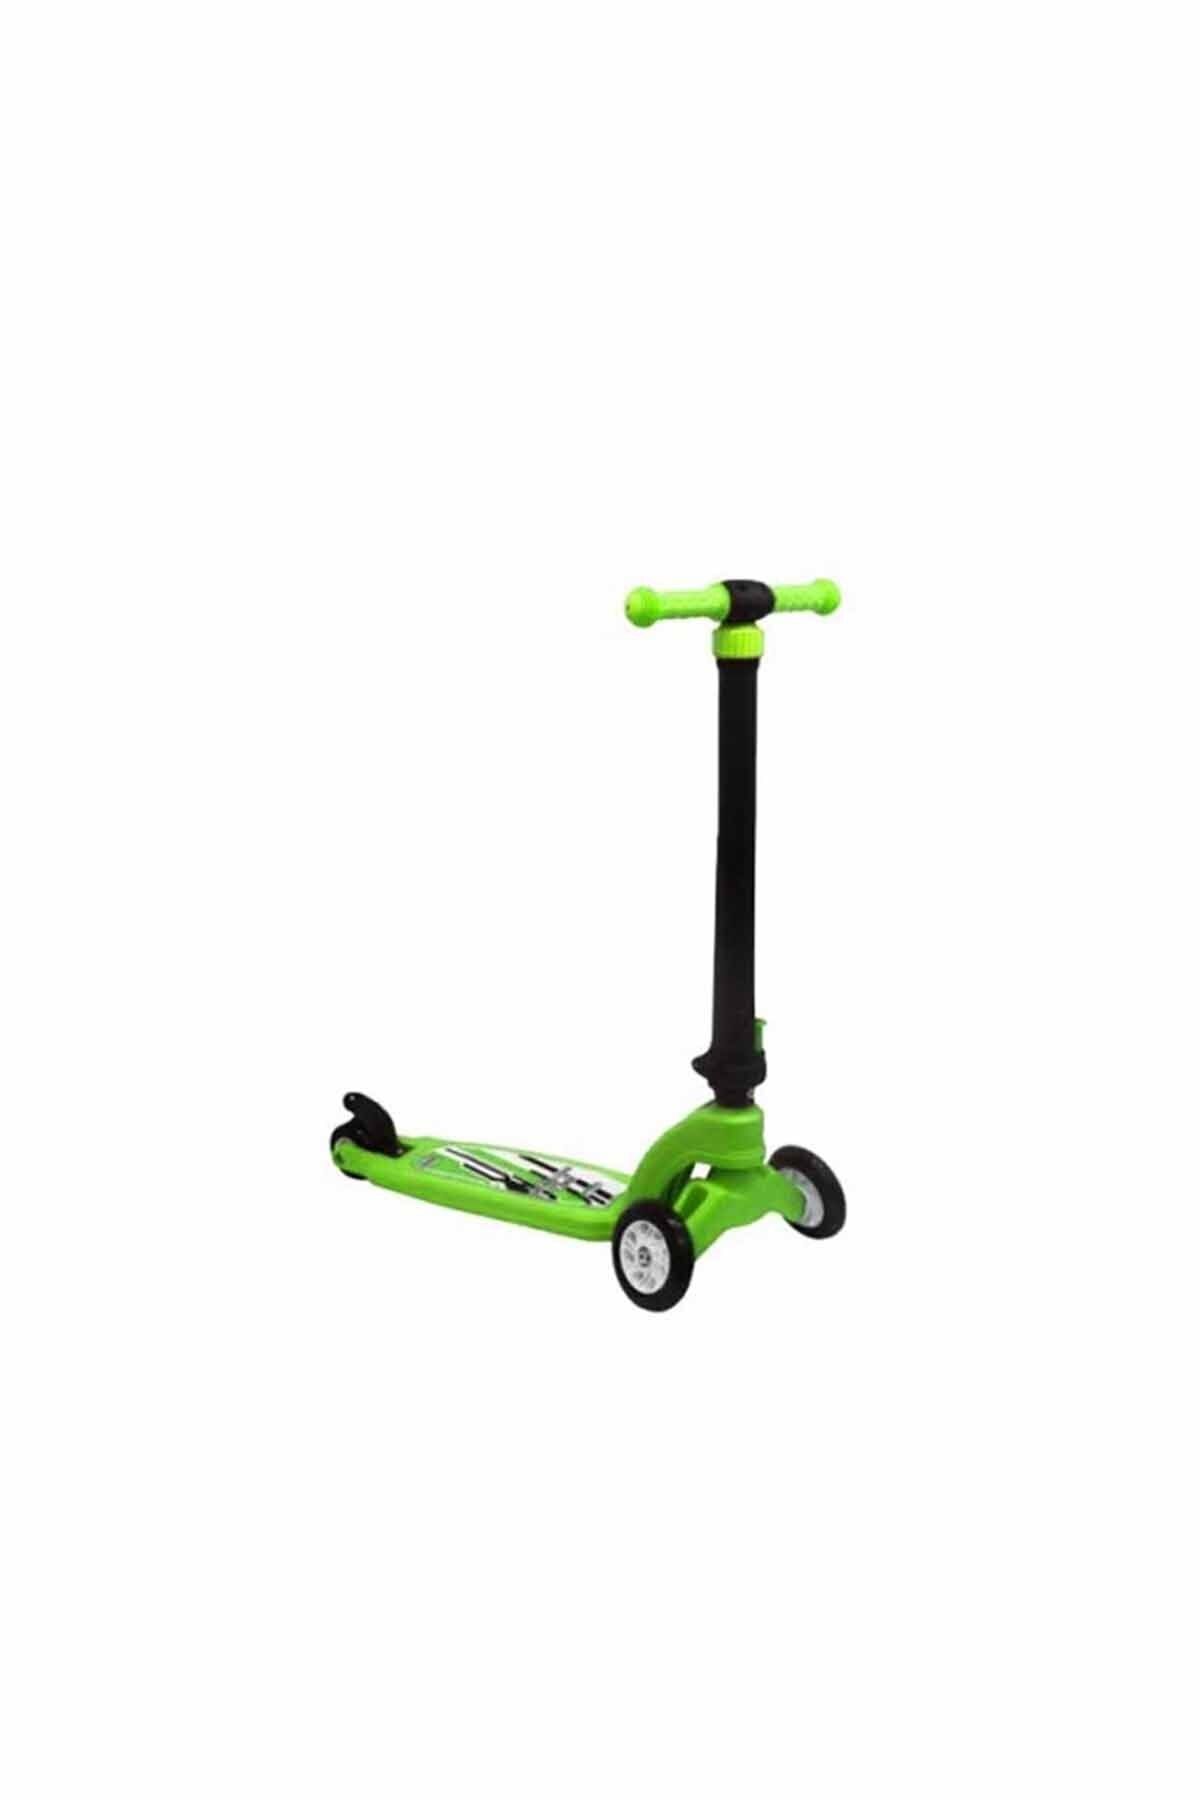 PİLSAN Cool Scooter (Yeşil) (Yeni)